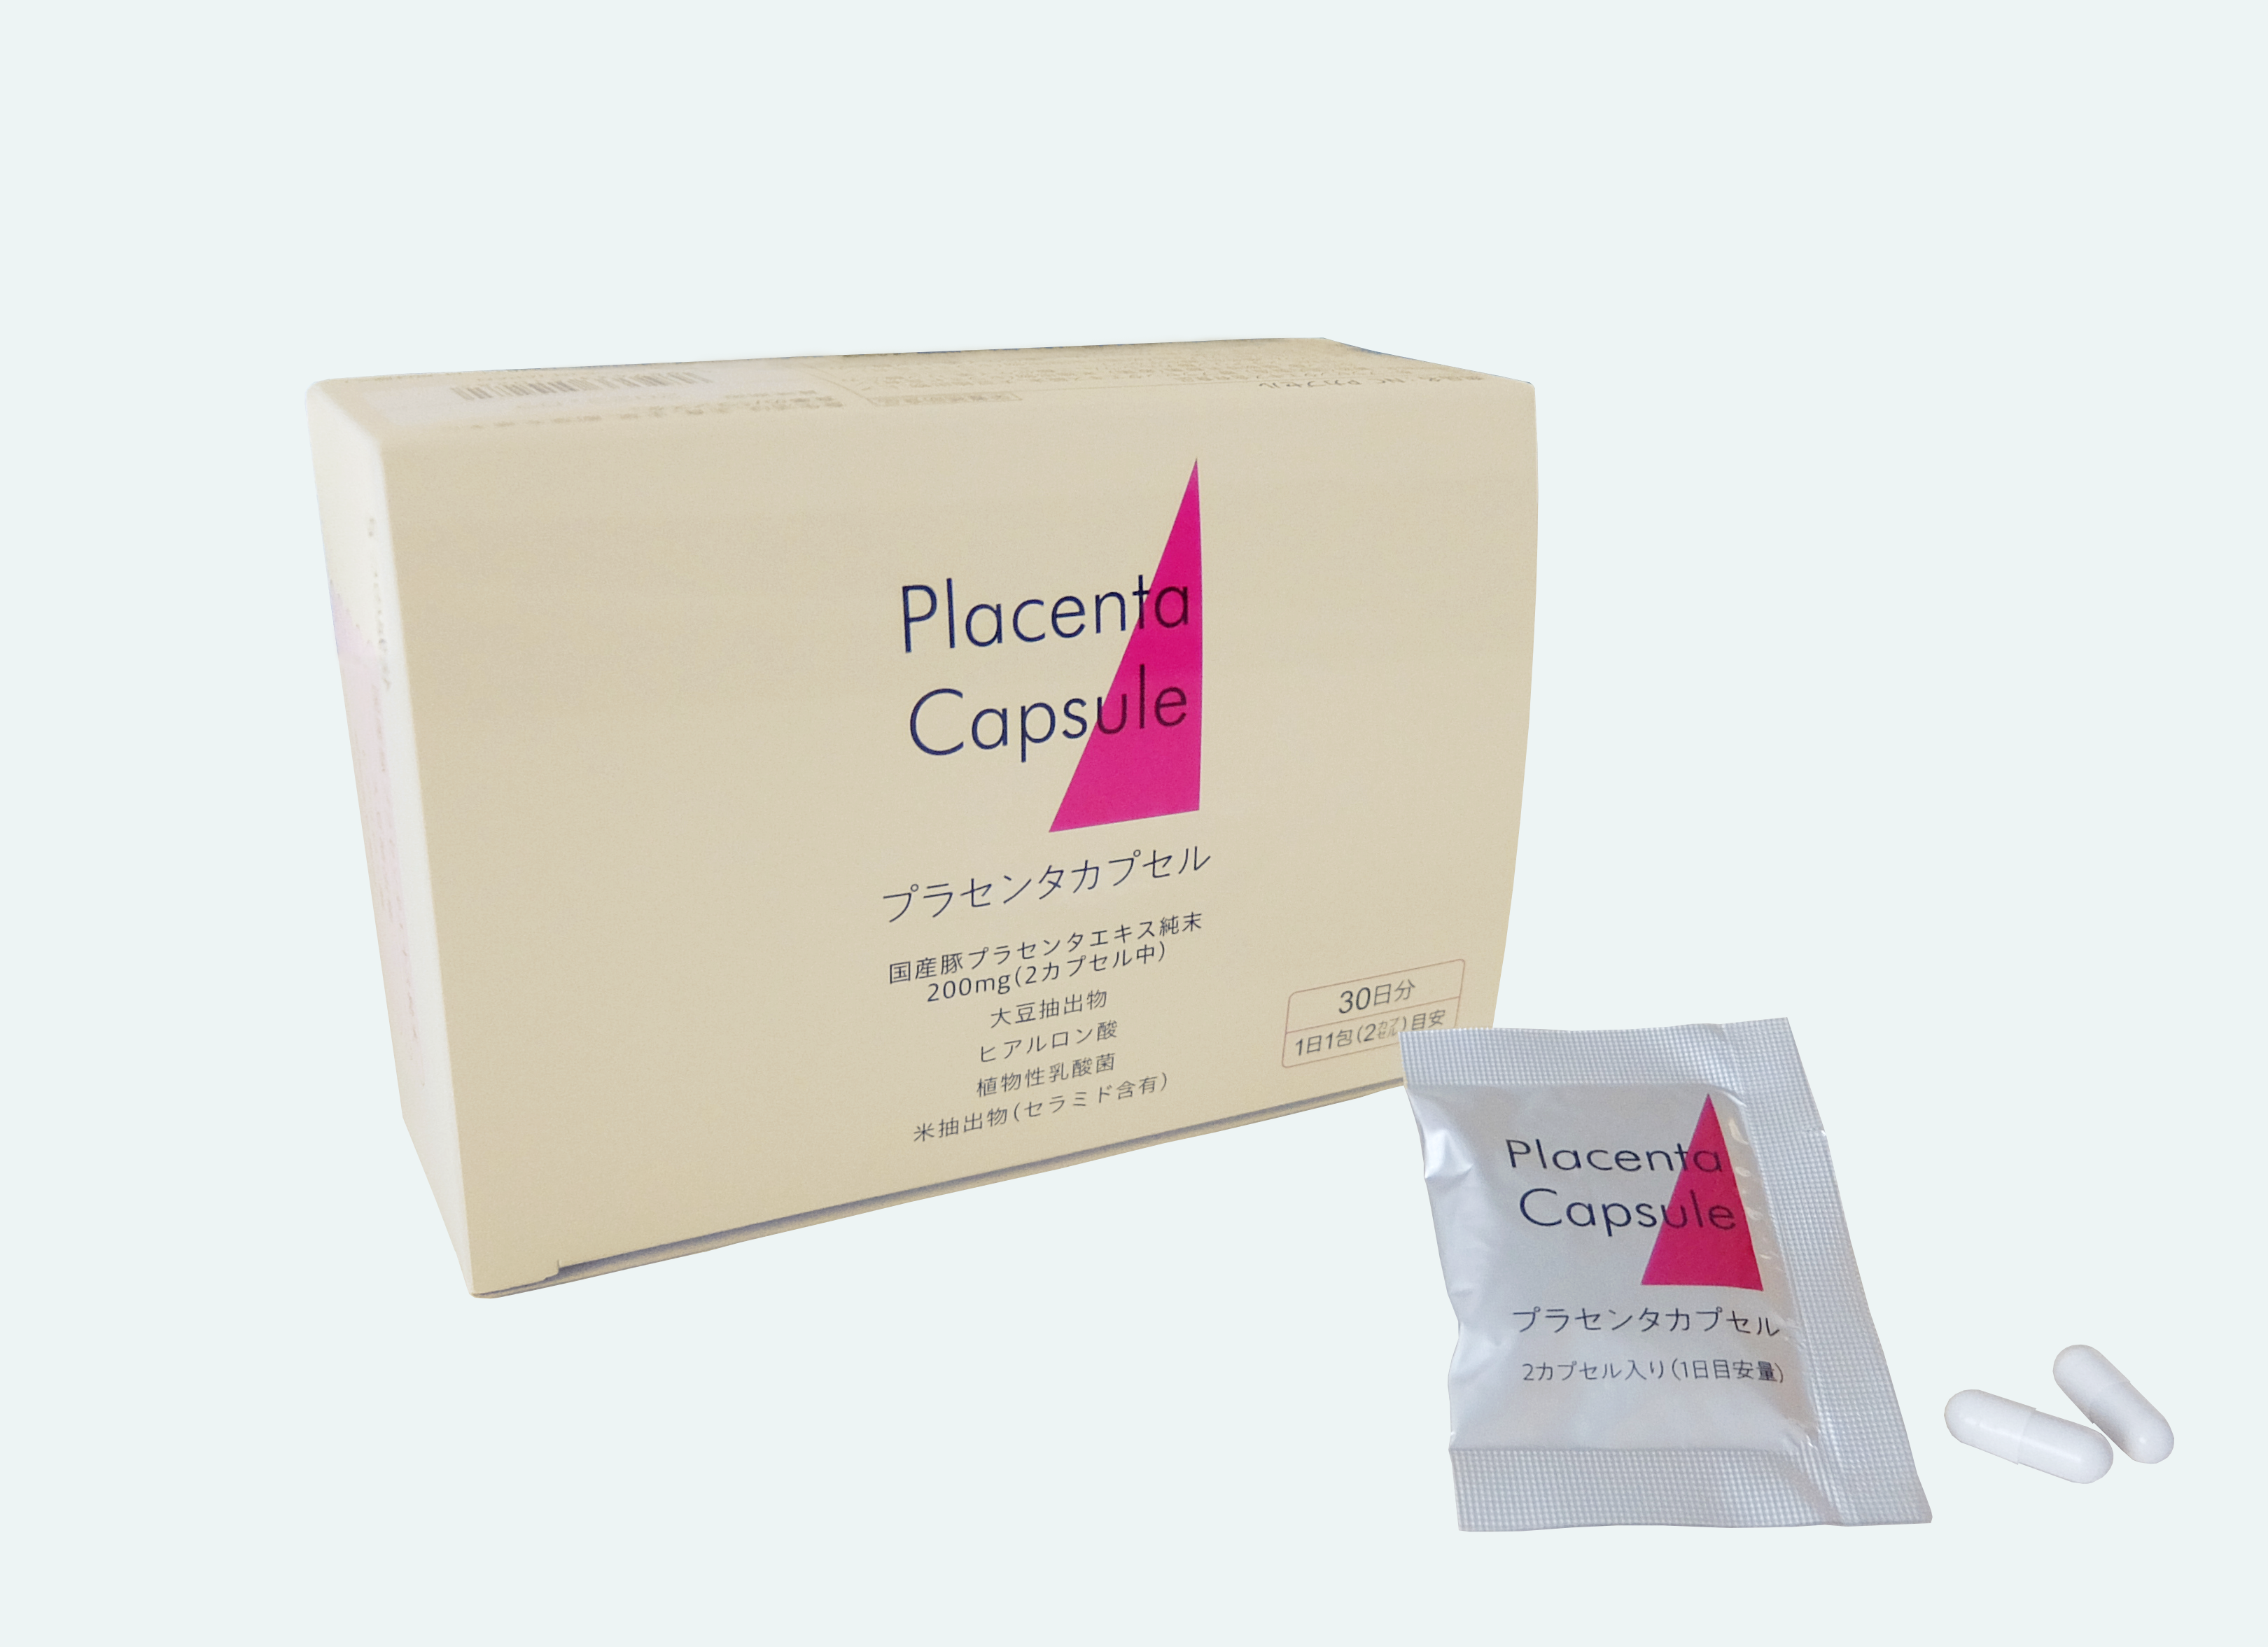 日本調剤PB商品「NC Pカプセル」の画像